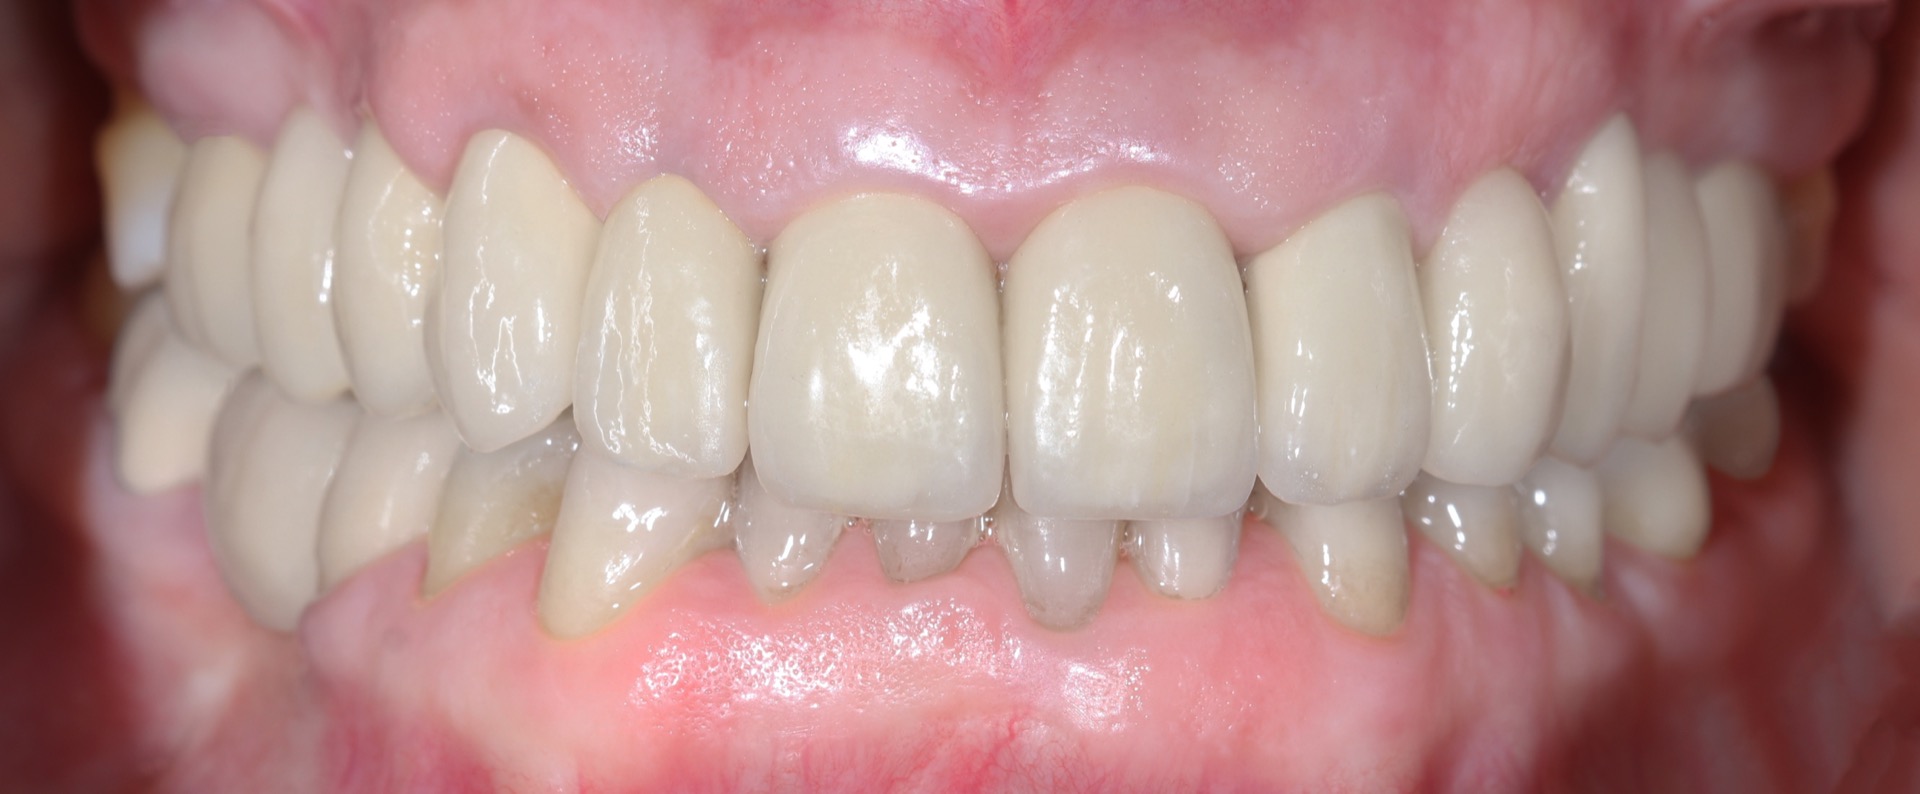 Τελική κατάσταση - Πρόσθια άποψη των αποκαταστάσεων τοποθετημένων στο στόμα (σε σύγκλειση) - Αποκατάσταση της αισθητικής �και της σύγκλεισης της ασθενούς.